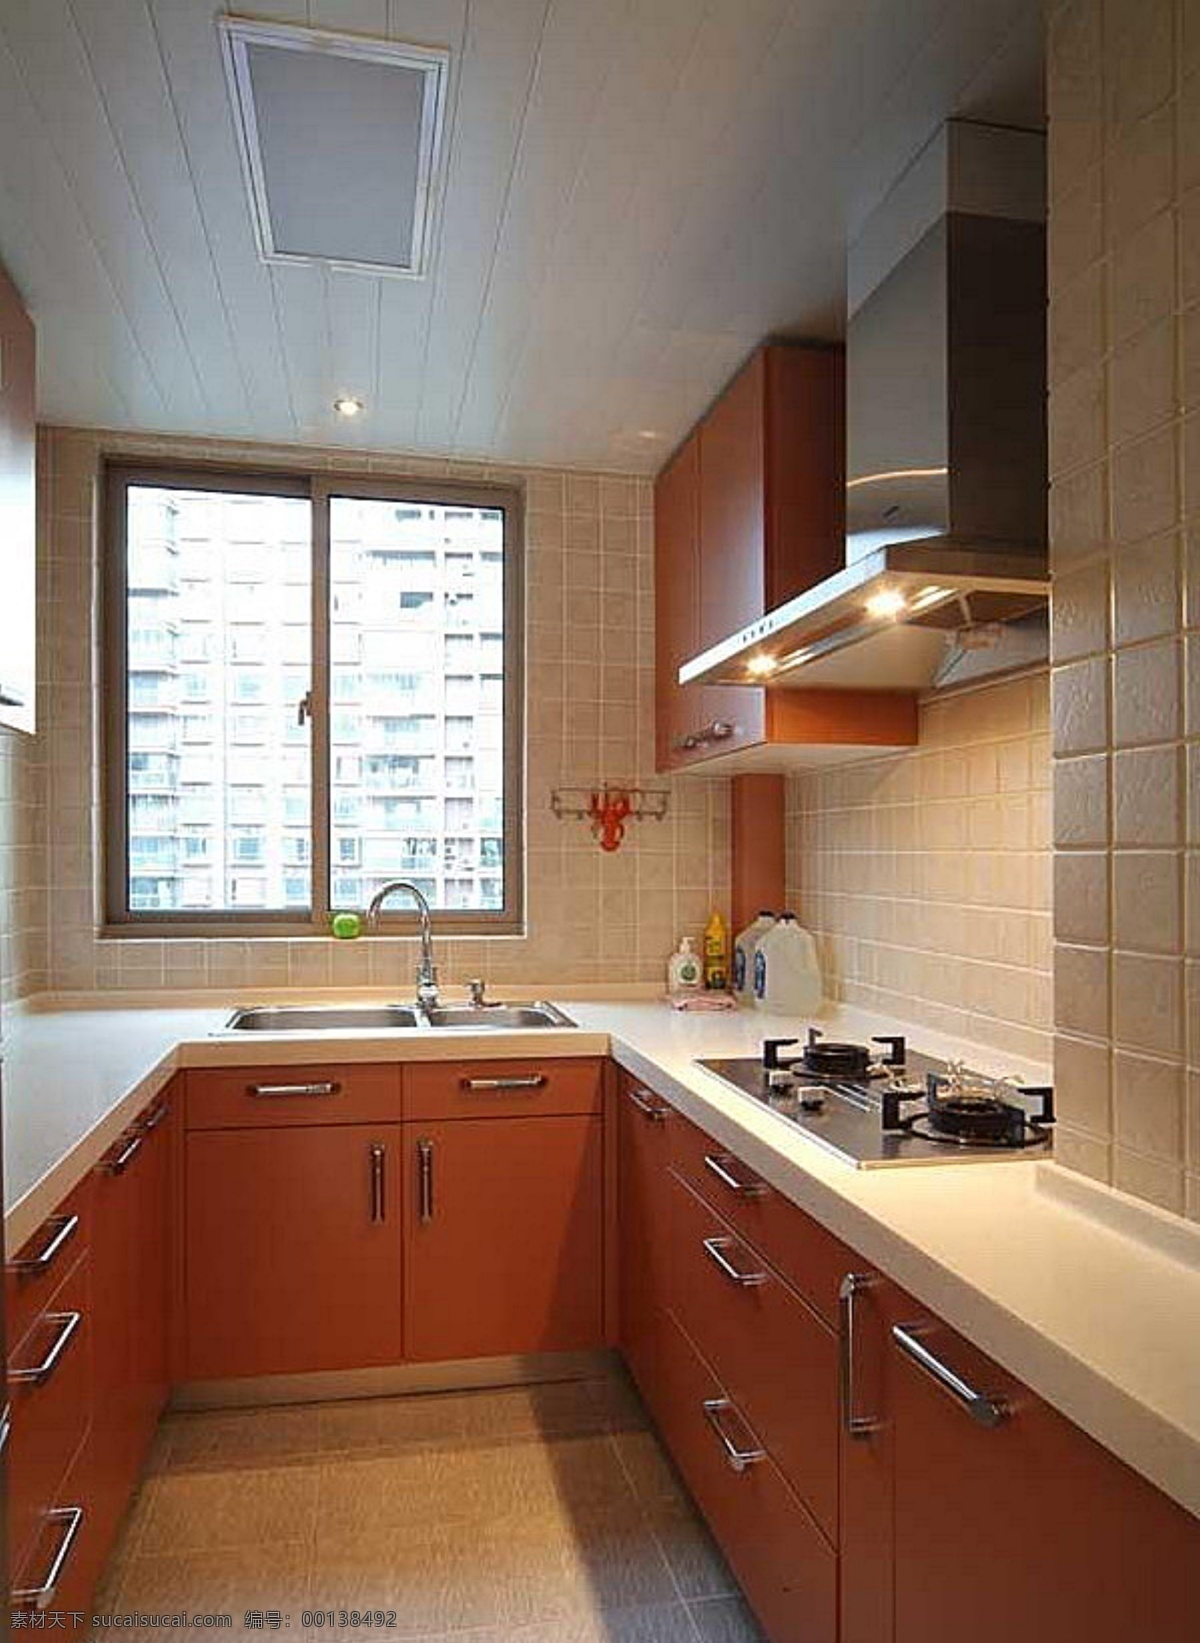 现代化 厨房 橘色面板 米色墙砖 吊柜组合 家居装饰素材 室内设计